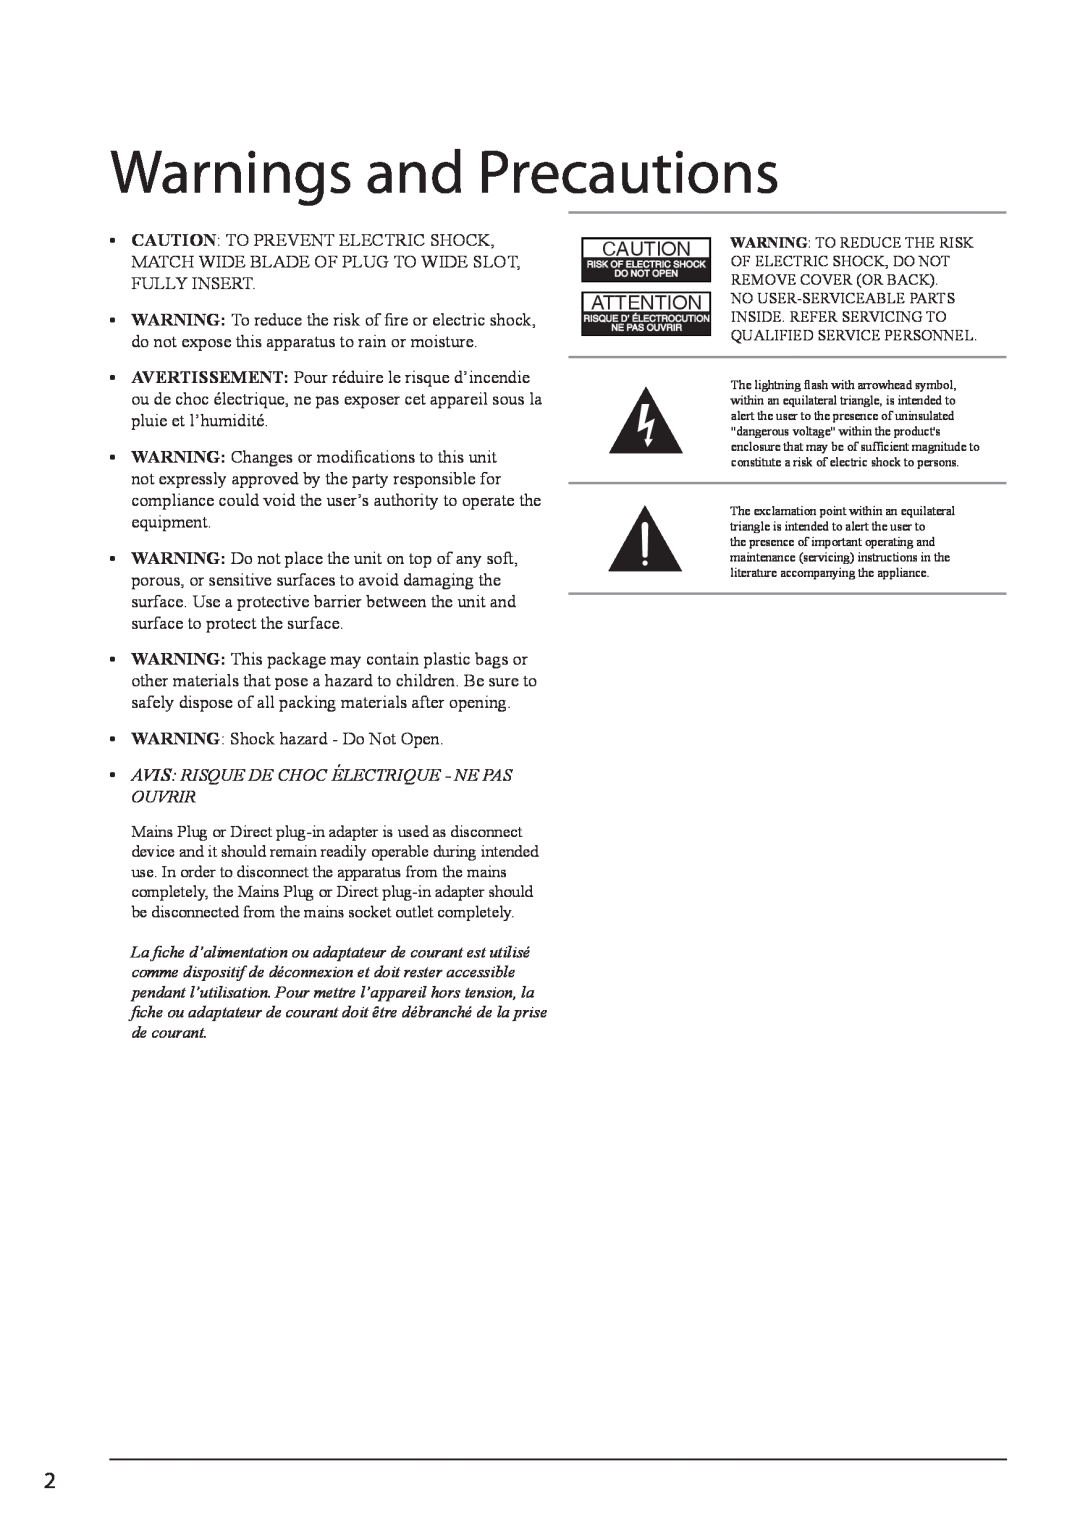 GPX HT12B manual Warnings and Precautions, Avis Risque De Choc Électrique - Ne Pas Ouvrir 